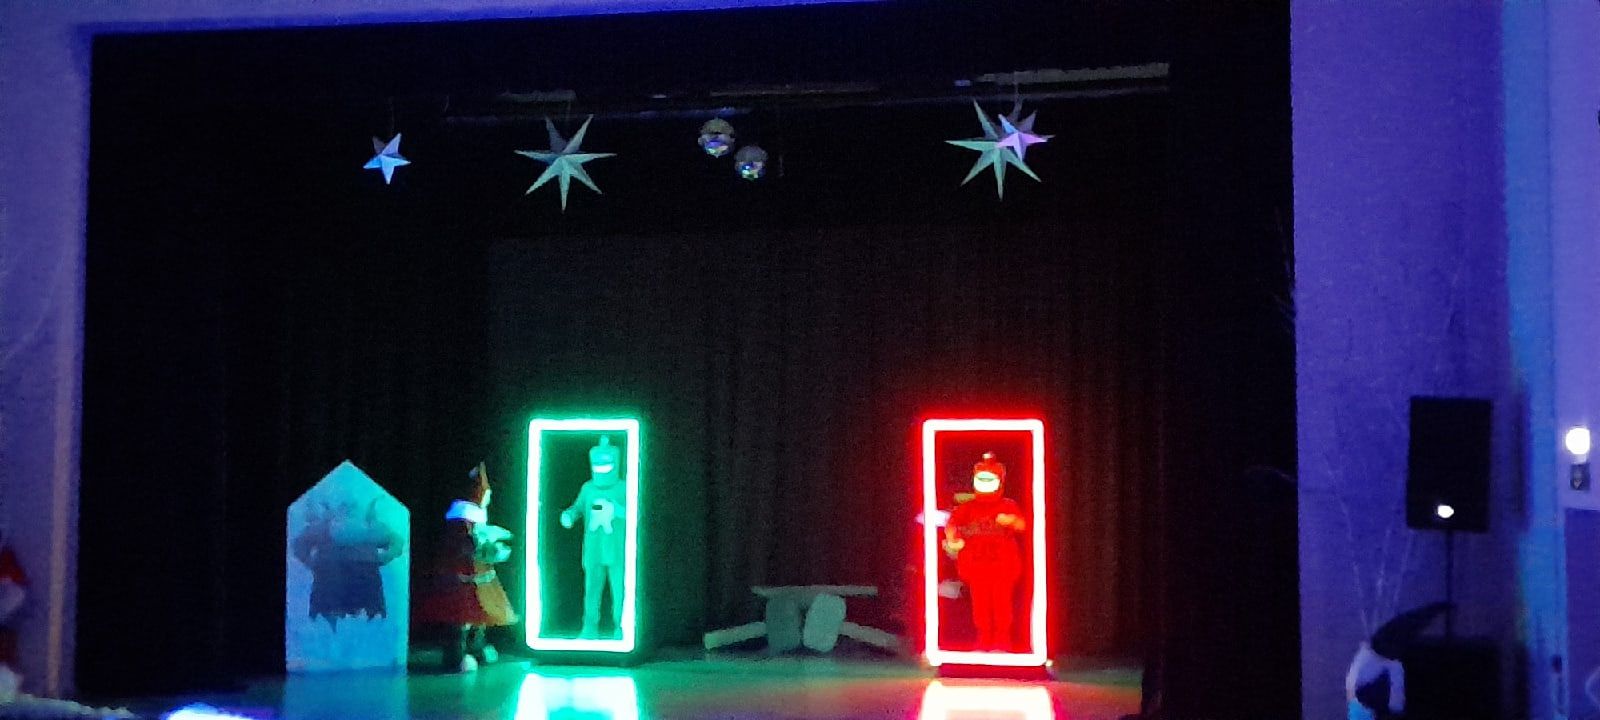 В Молодежном центре для детворы показали новогоднее представление